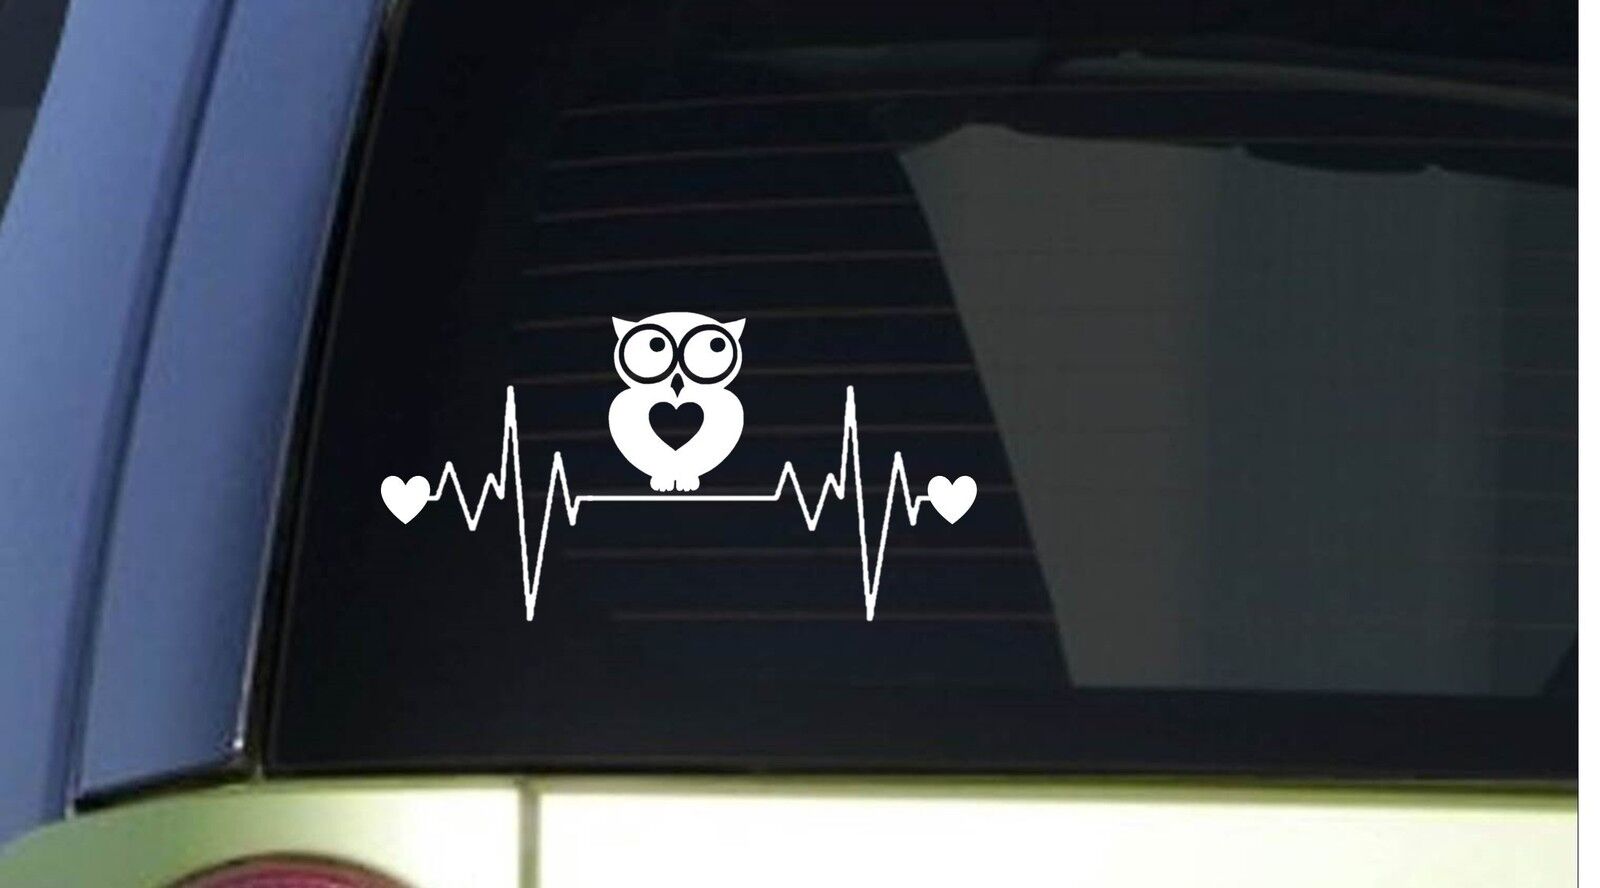 Owl heartbeat lifeline *I233* 8